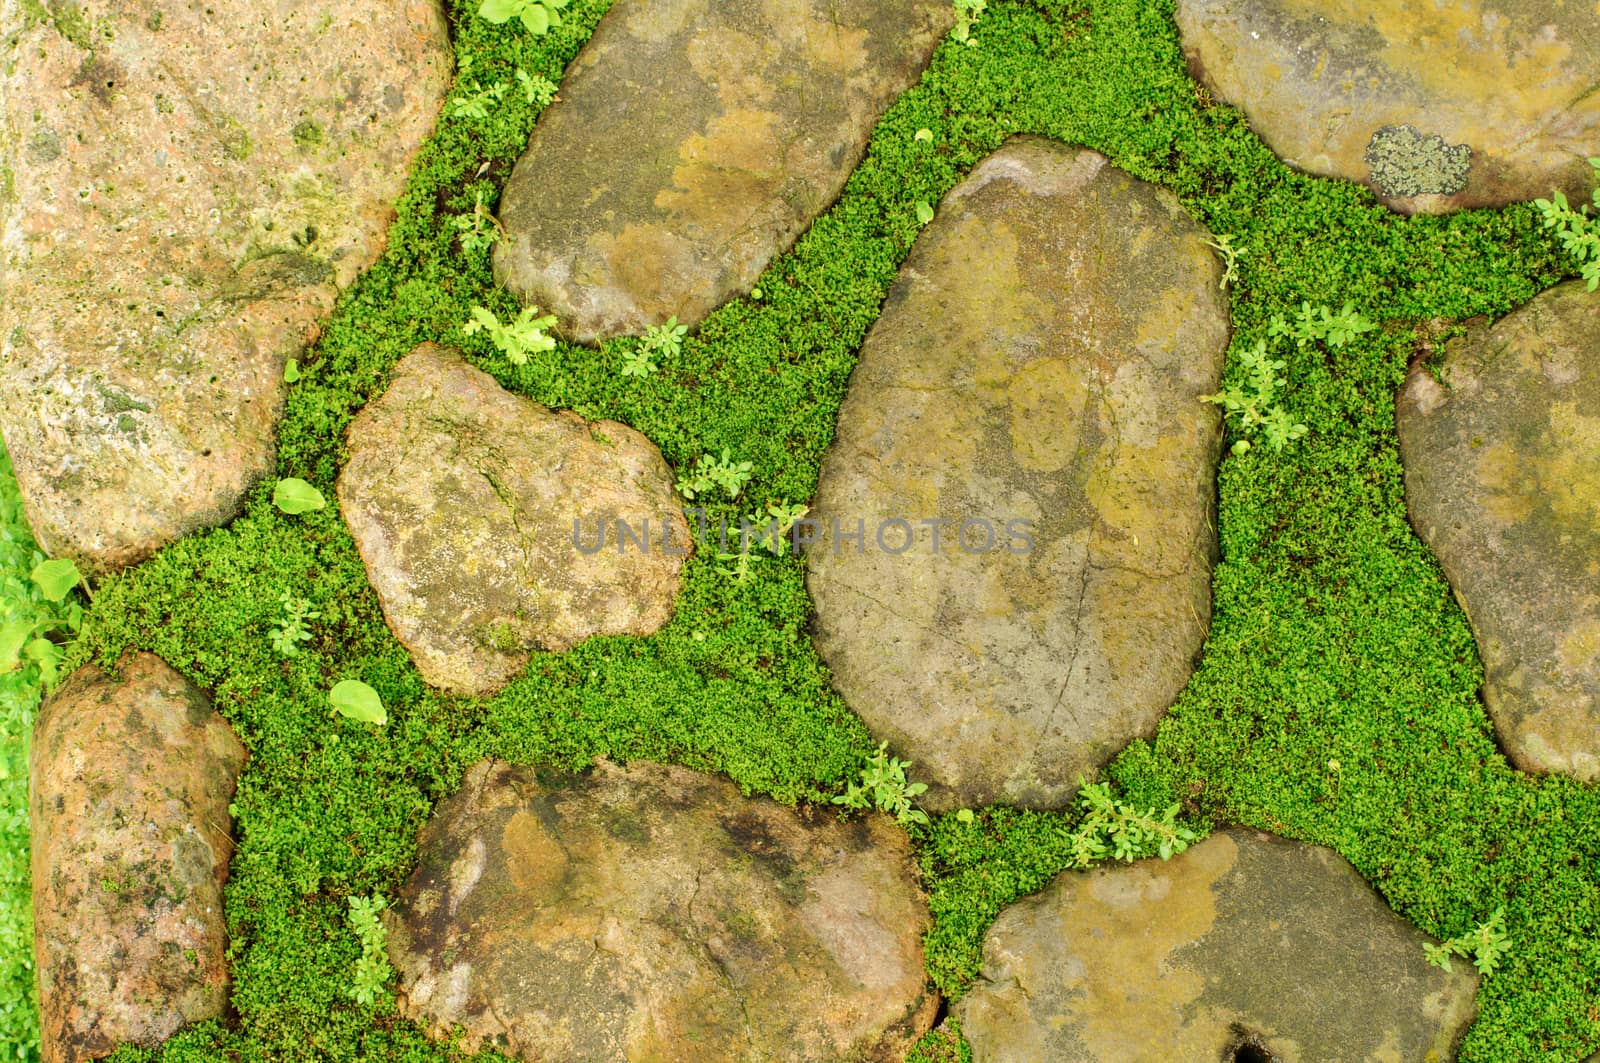 The grass green between stones footprint